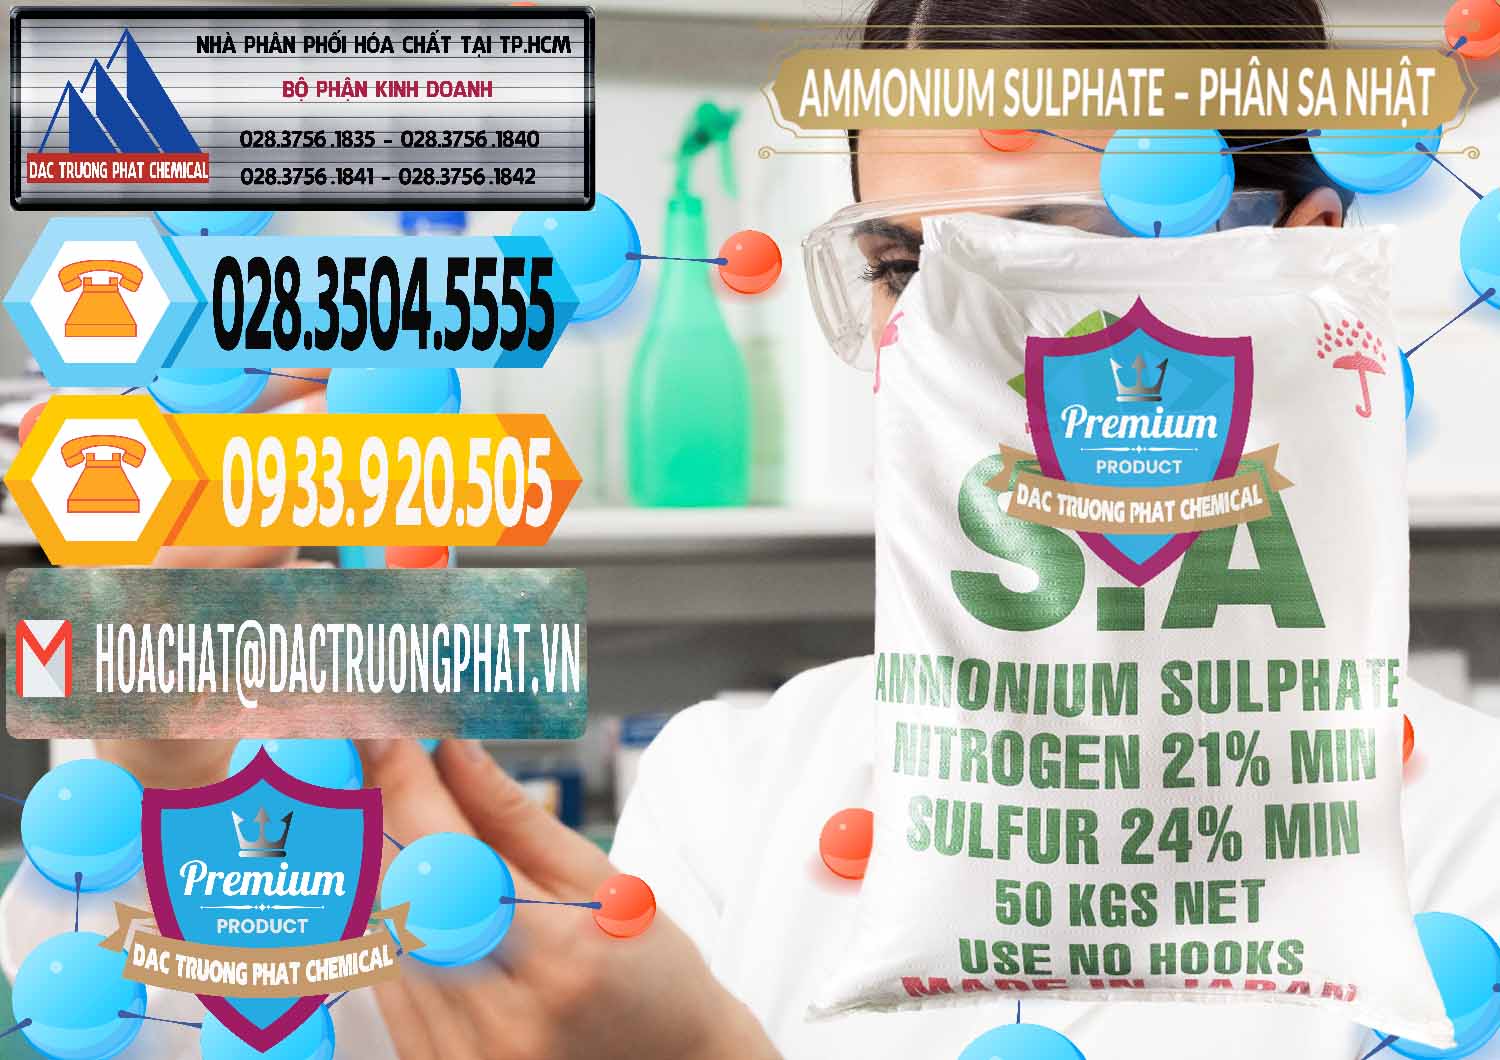 Cty chuyên kinh doanh _ bán Ammonium Sulphate – Phân Sa Nhật Japan - 0023 - Đơn vị chuyên cung cấp ( nhập khẩu ) hóa chất tại TP.HCM - hoachattayrua.net